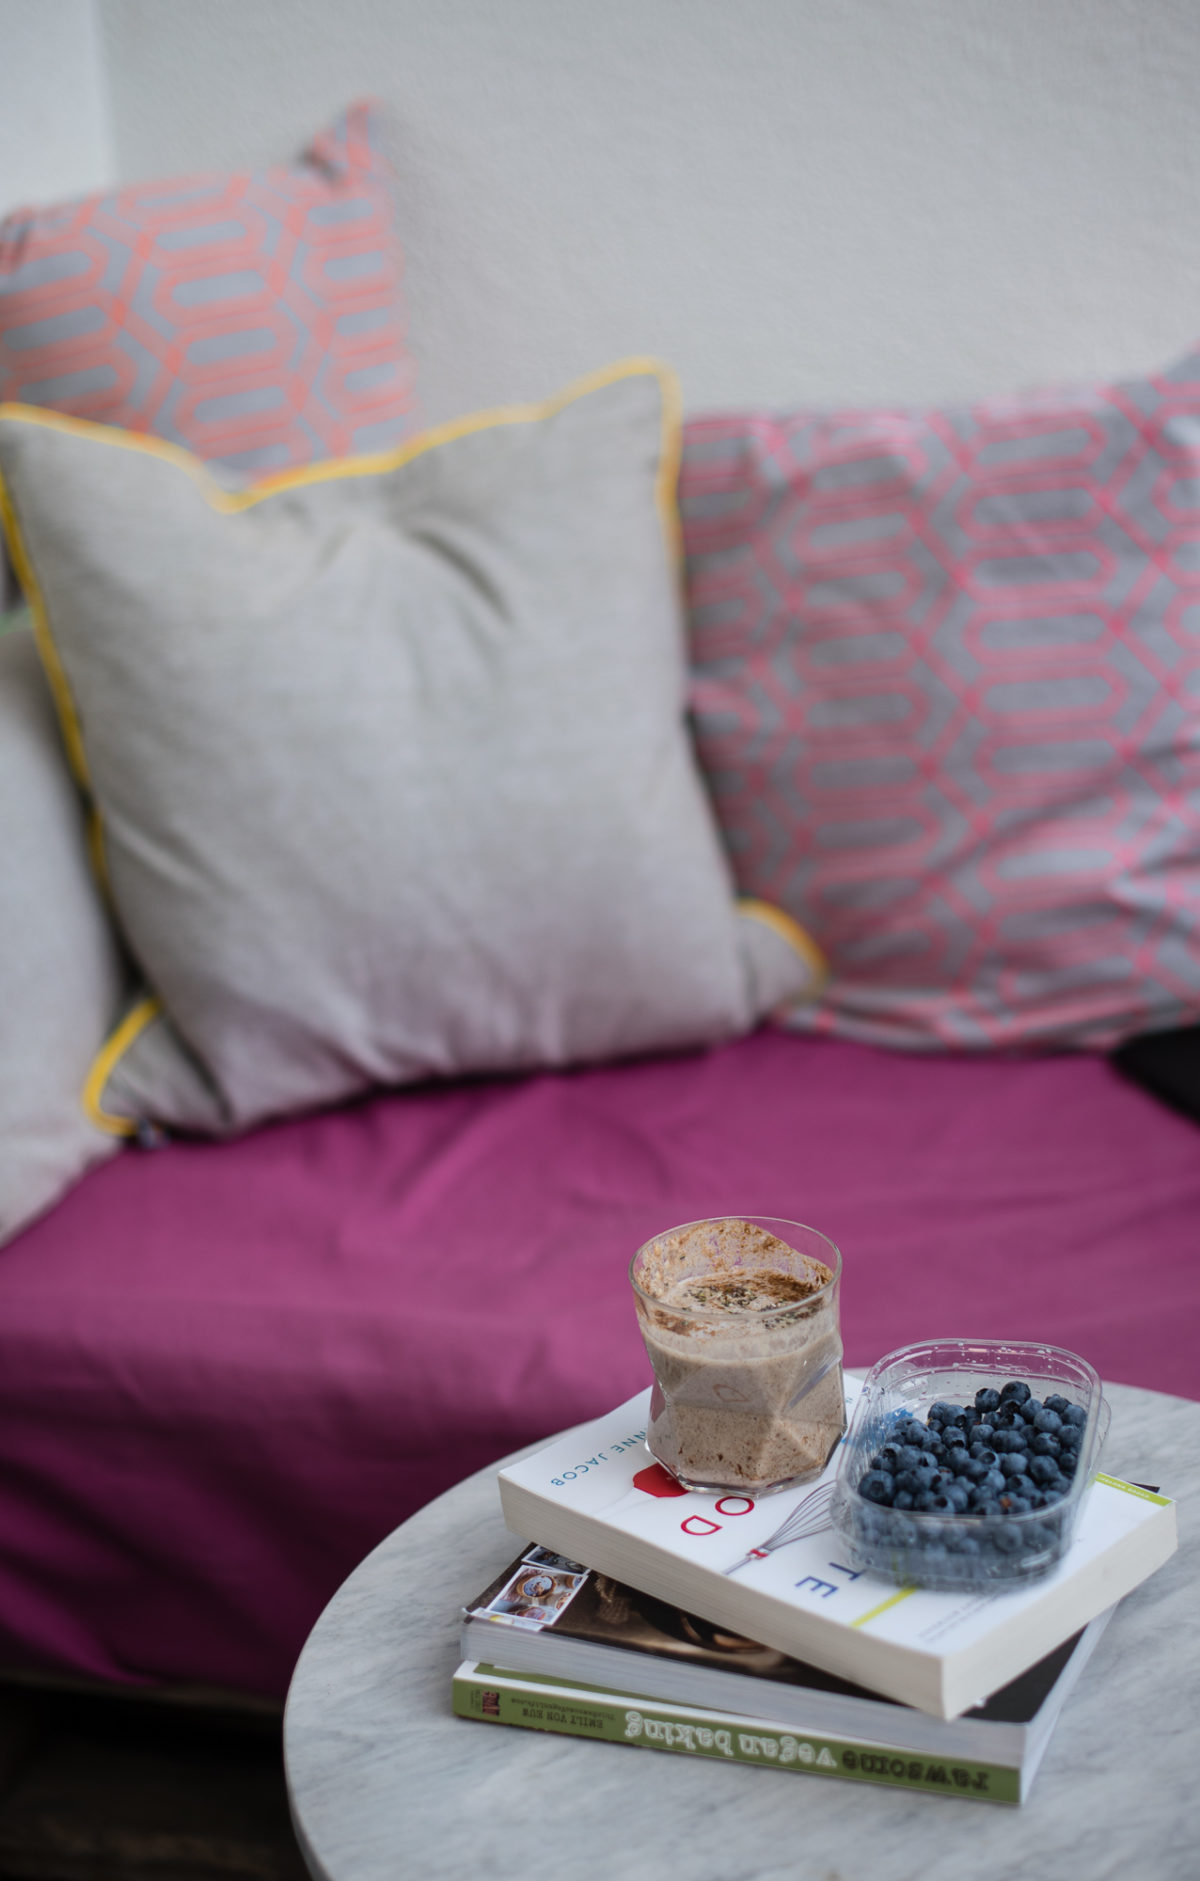 Sitzecke mit Iced Chai Latte im Glas auf kleinem Tisch, dazu Bücher und Blaubeeren in Plastikschale